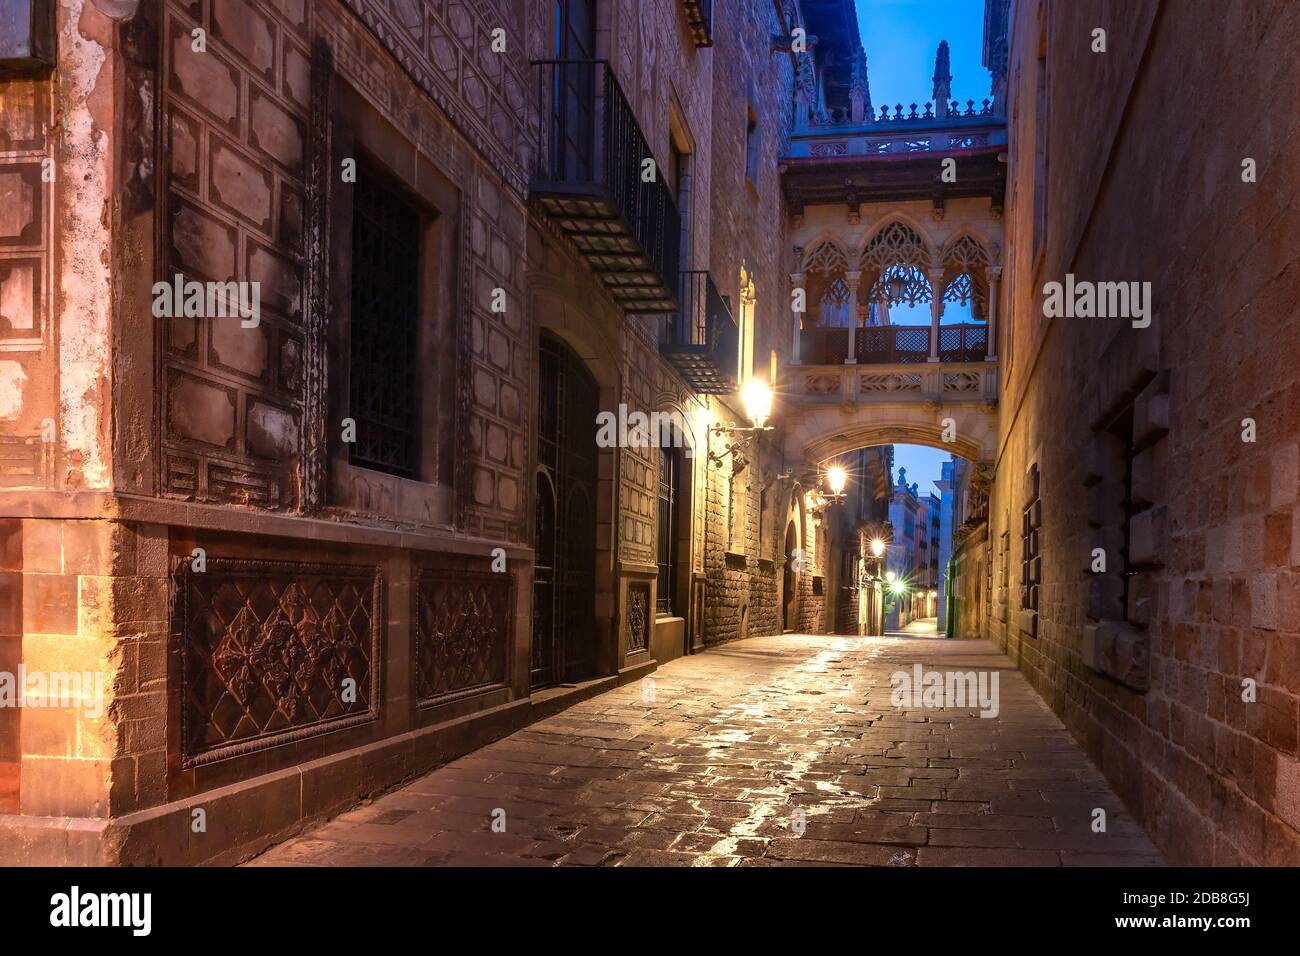 Angosta calle del Bisbe medievales adoquinadas calles con el puente de los suspiros en el Barrio Gótico de la mañana, Barcelona, Cataluña, España Foto de stock